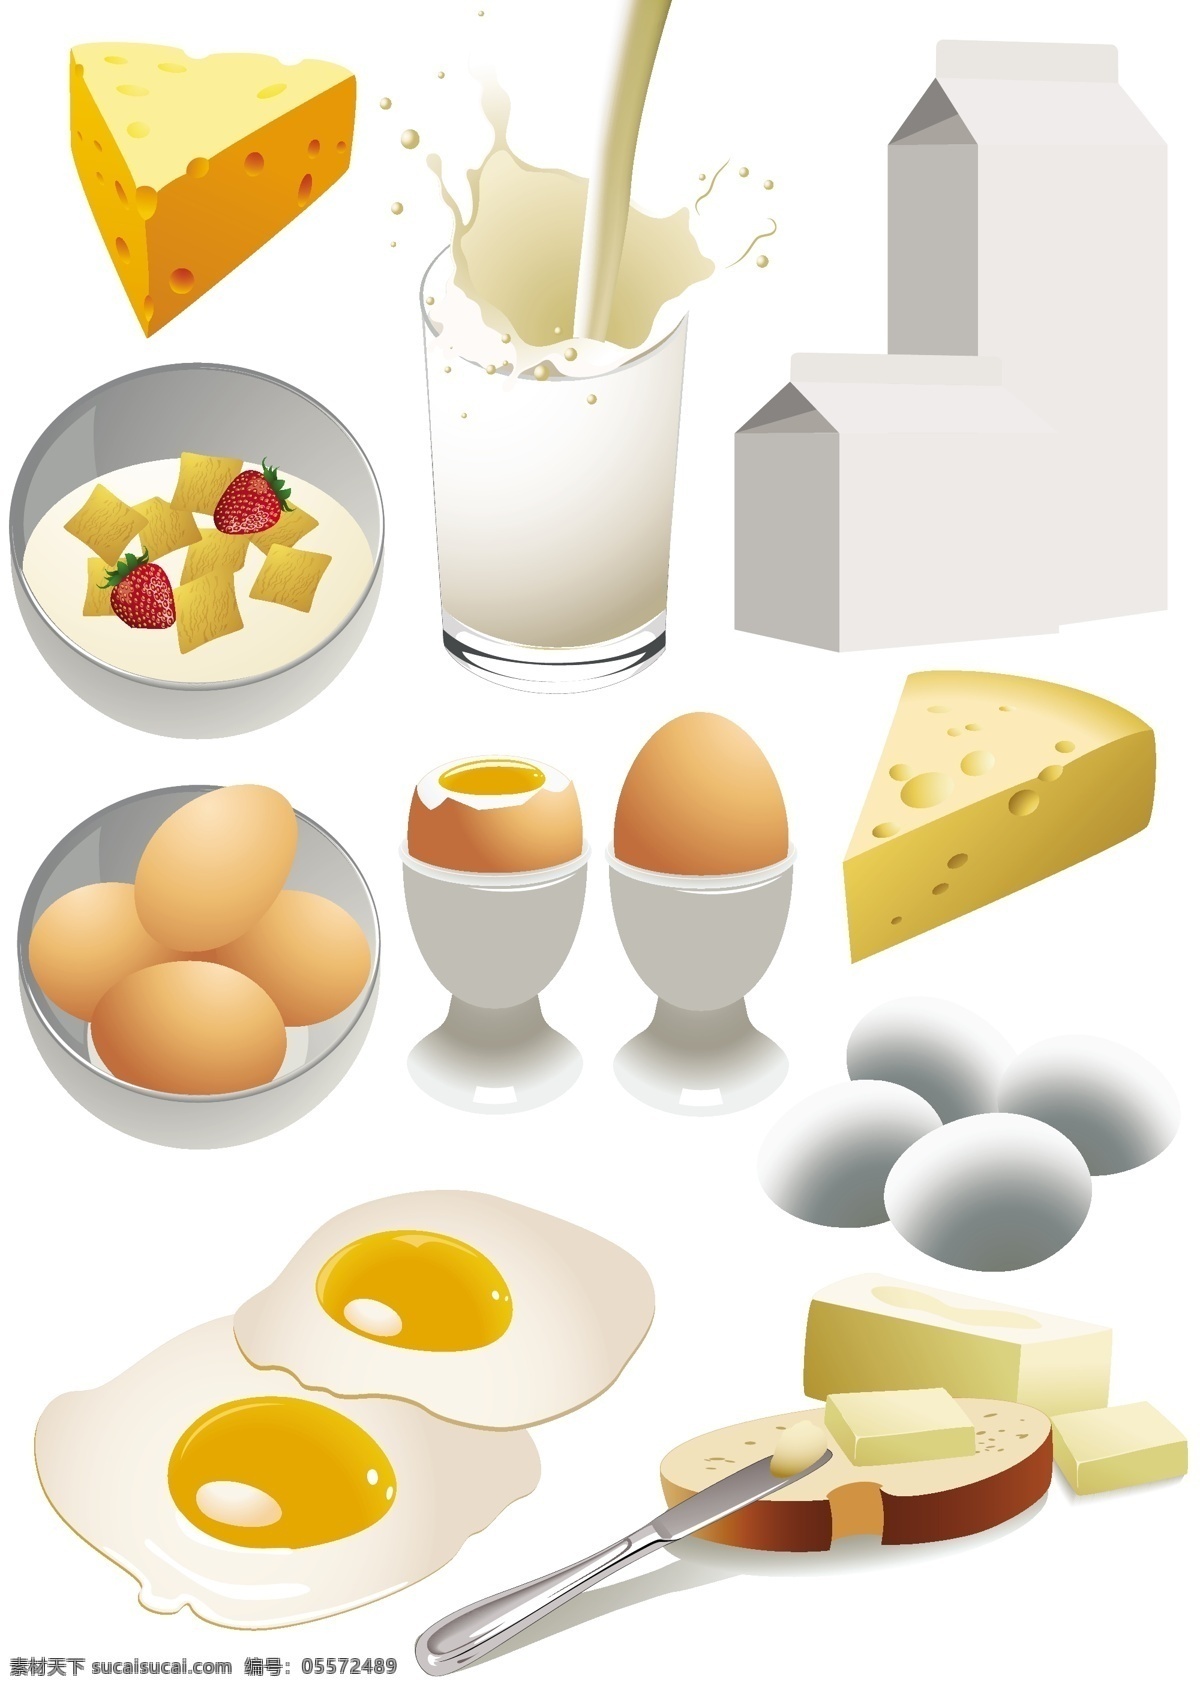 美味 丰盛 早餐 实用 图标 矢量 eps格式 鸡蛋 面包 奶酪 牛奶 牛奶盒 矢量素材 酸奶 煎蛋 黄油 图形符号 矢量图 其他矢量图